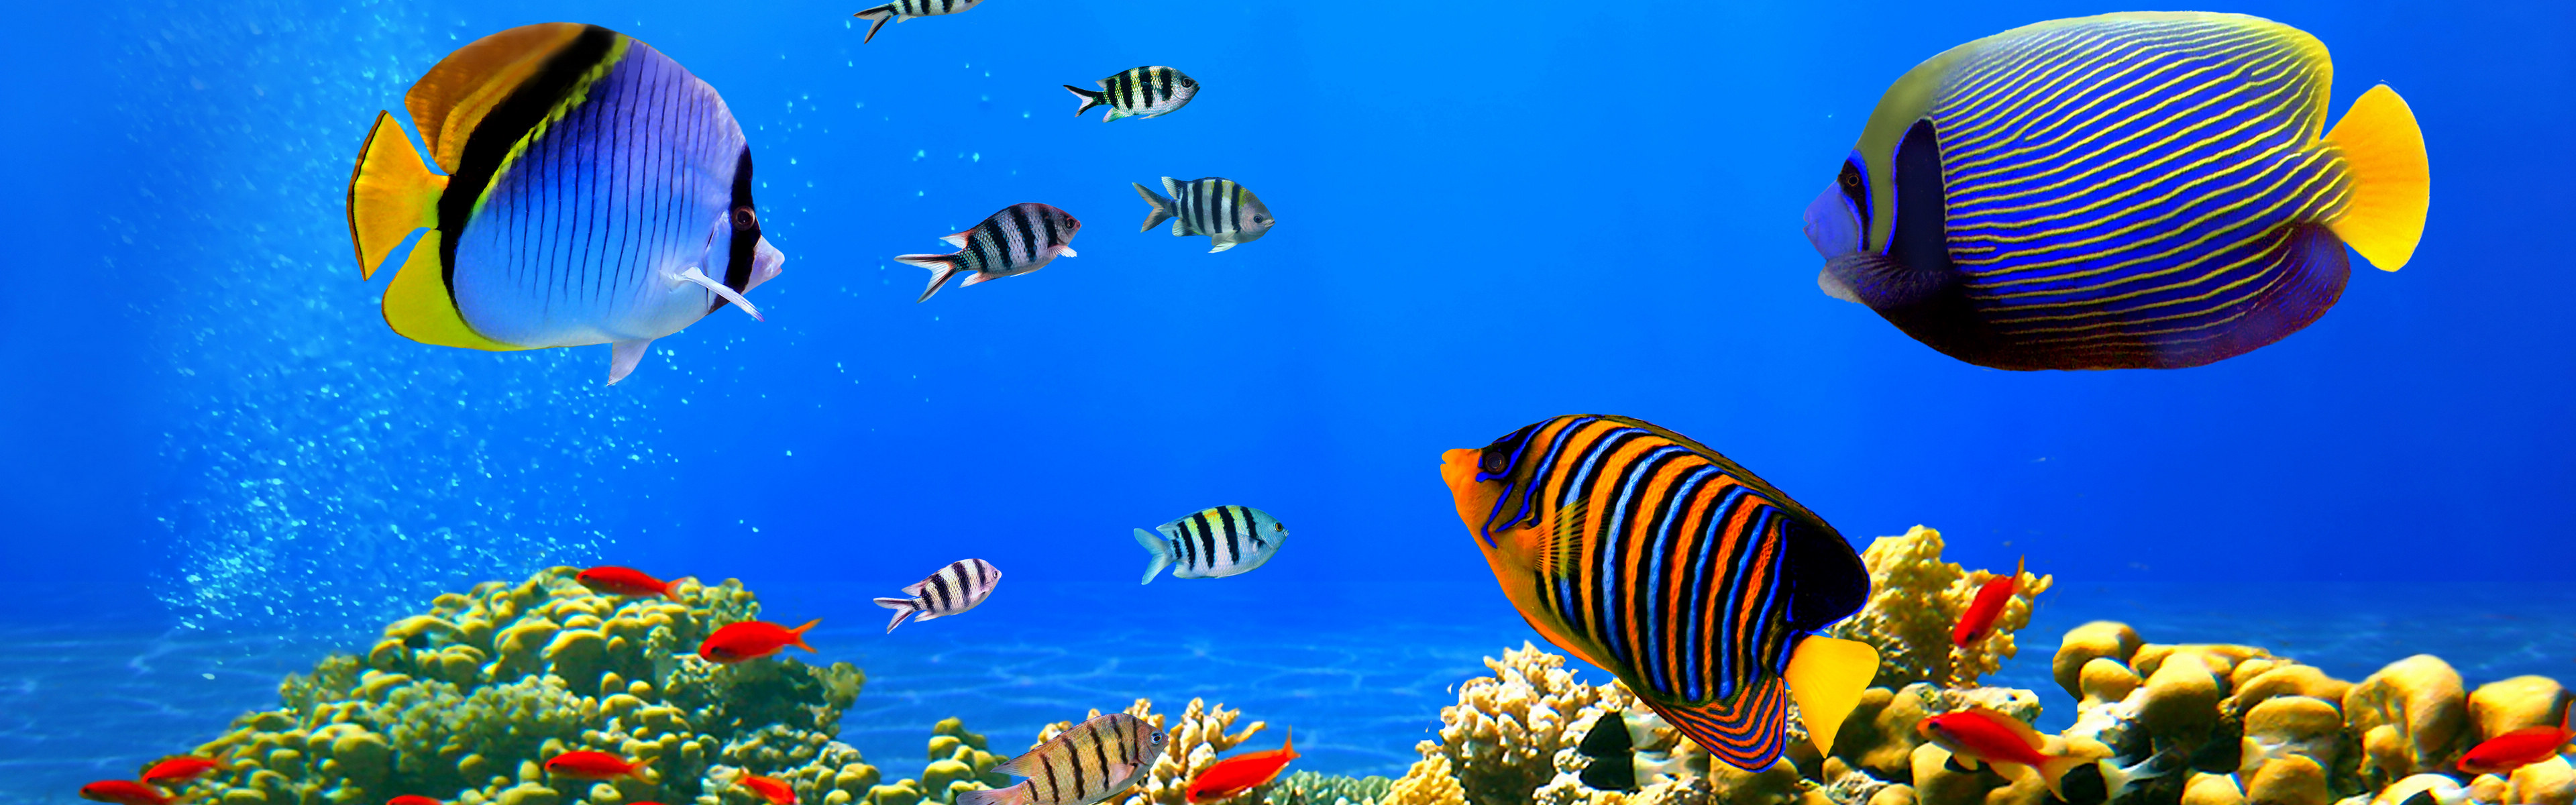 热带鱼 海底世界 超宽双屏宽屏壁纸